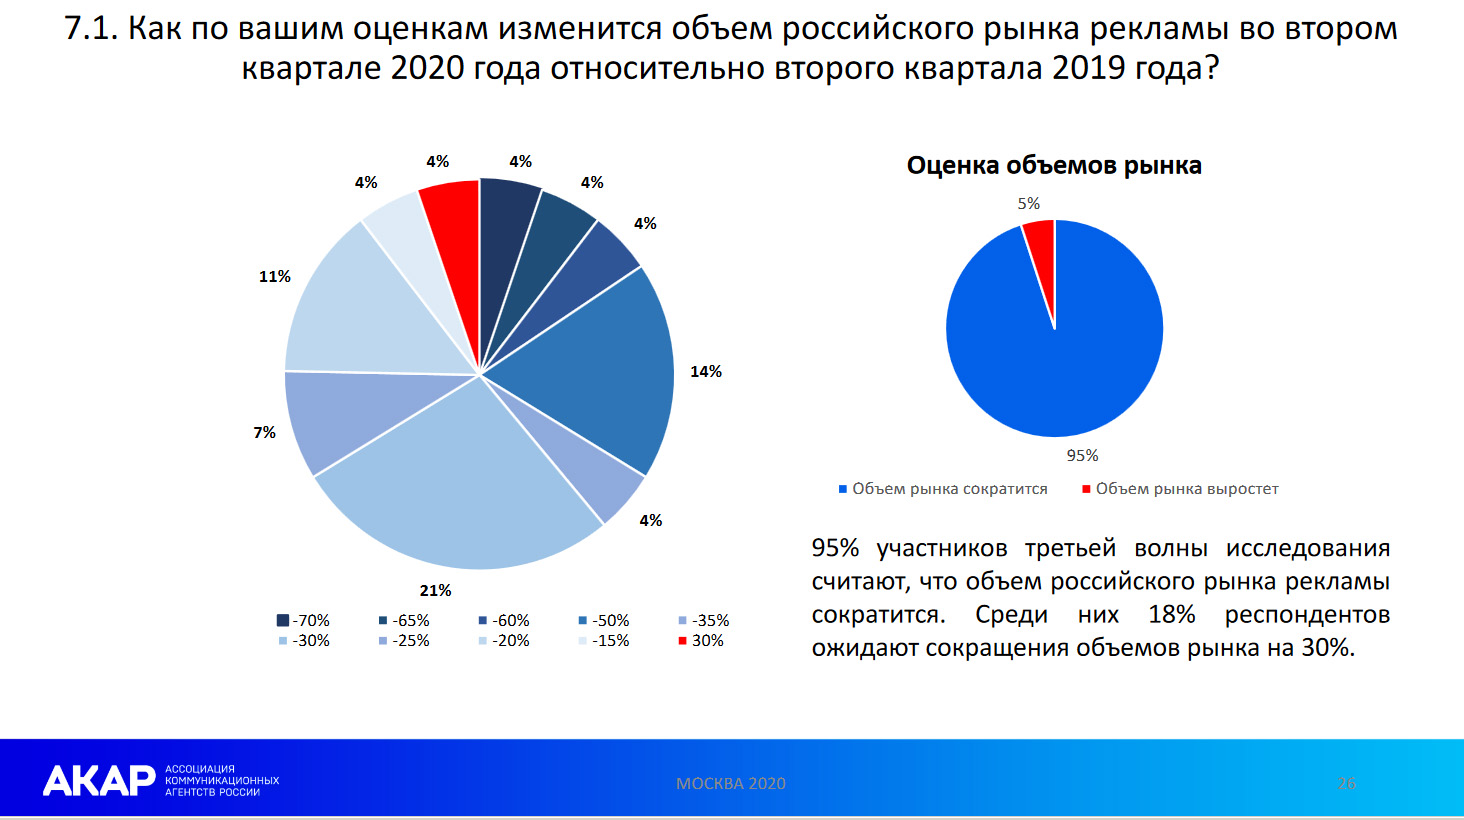 95% участников третьей волны исследования считают, что объём российского рынка рекламы сократится